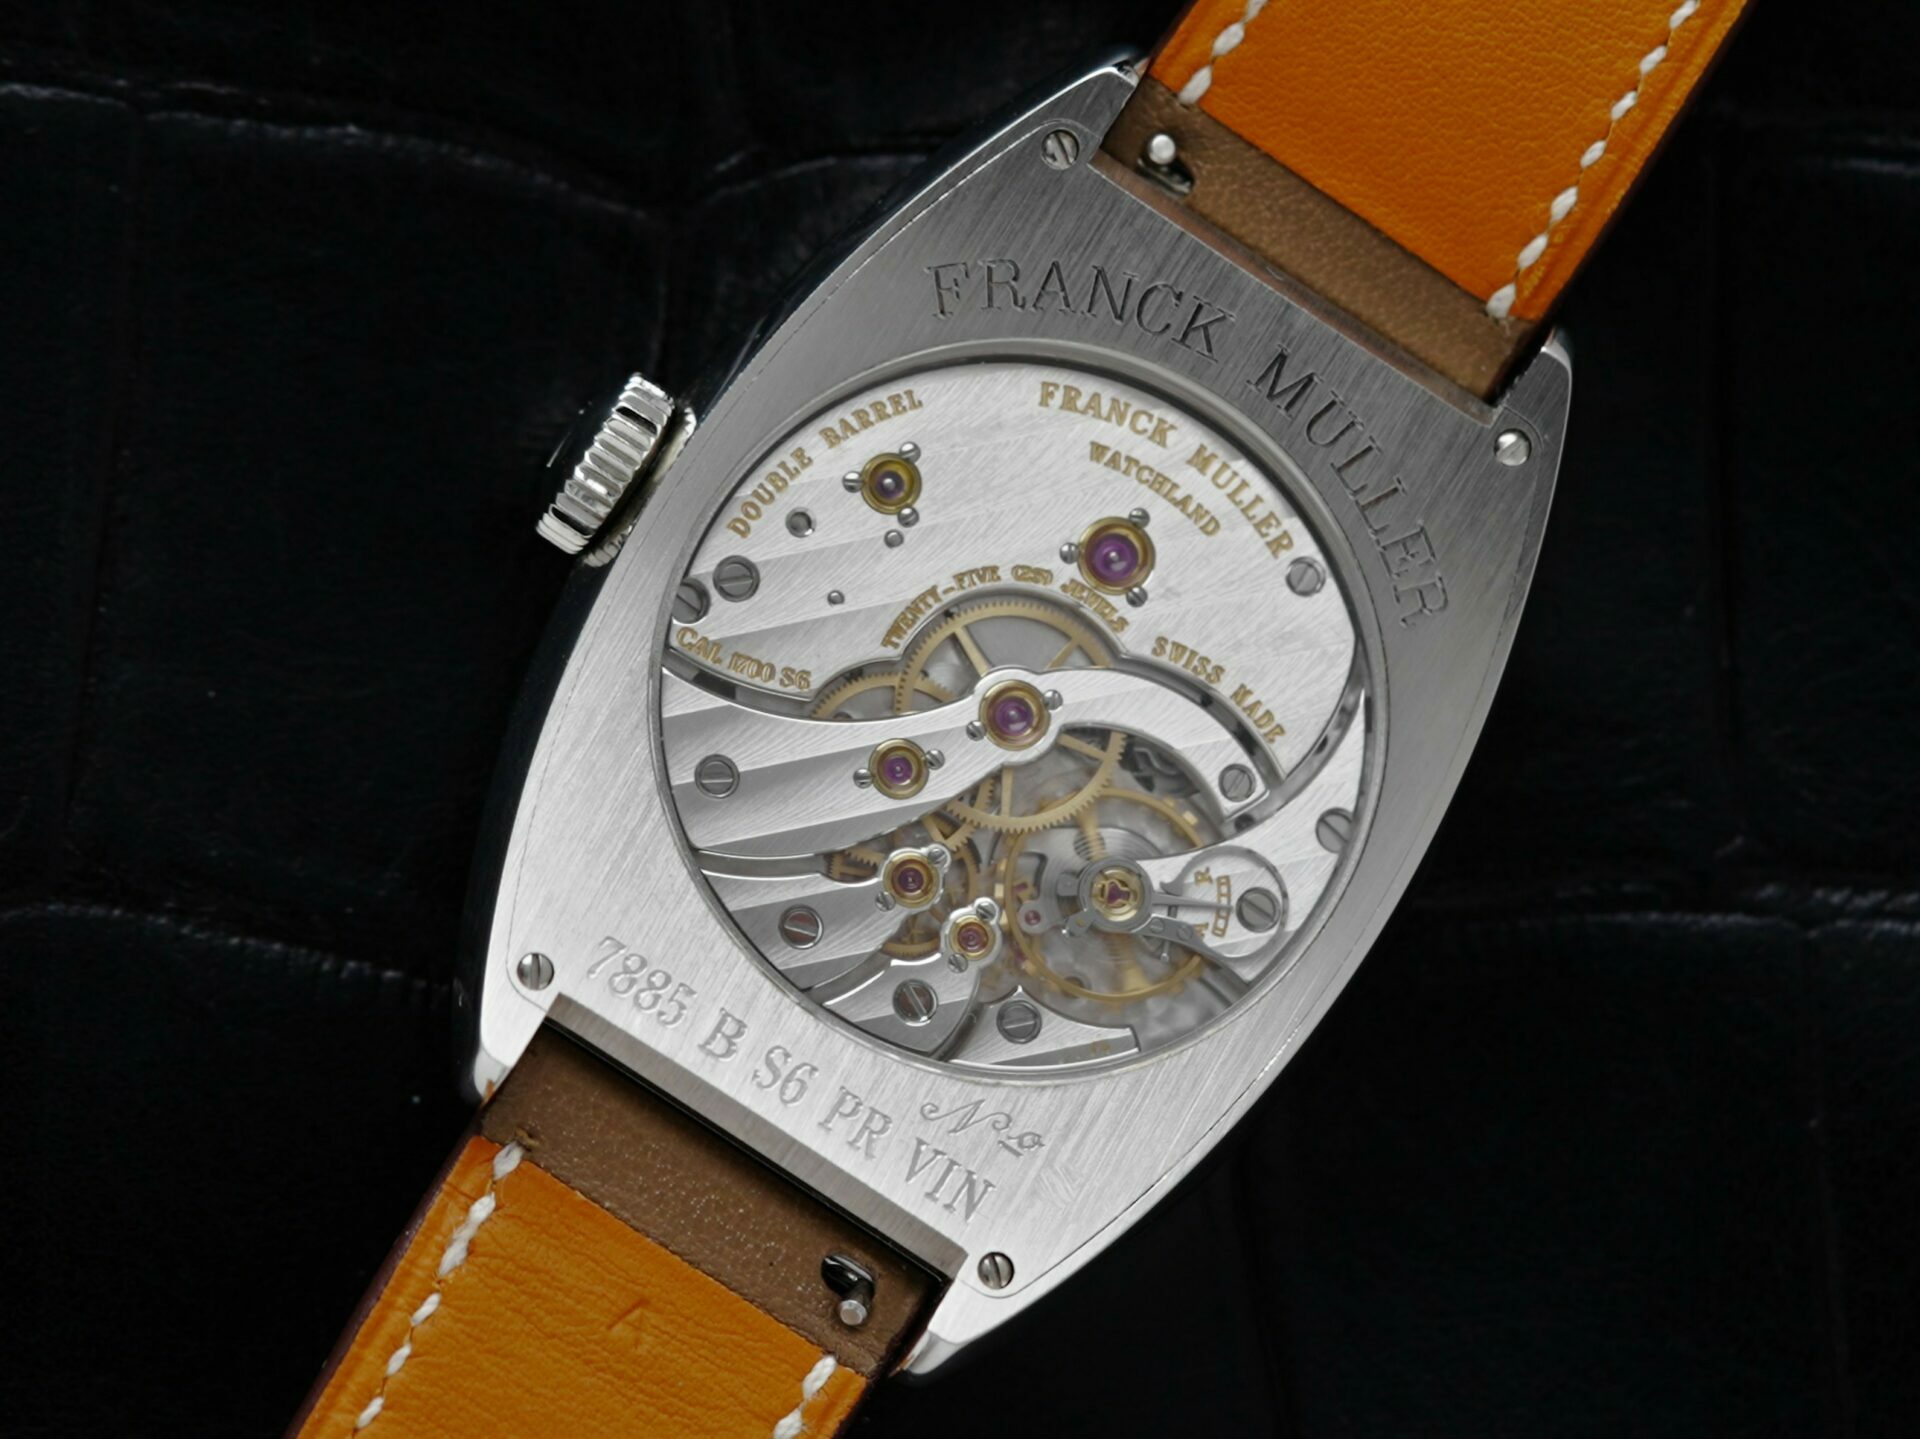 Back side of the Franck Muller Vintage Curvex 7 Day Reserve watch.